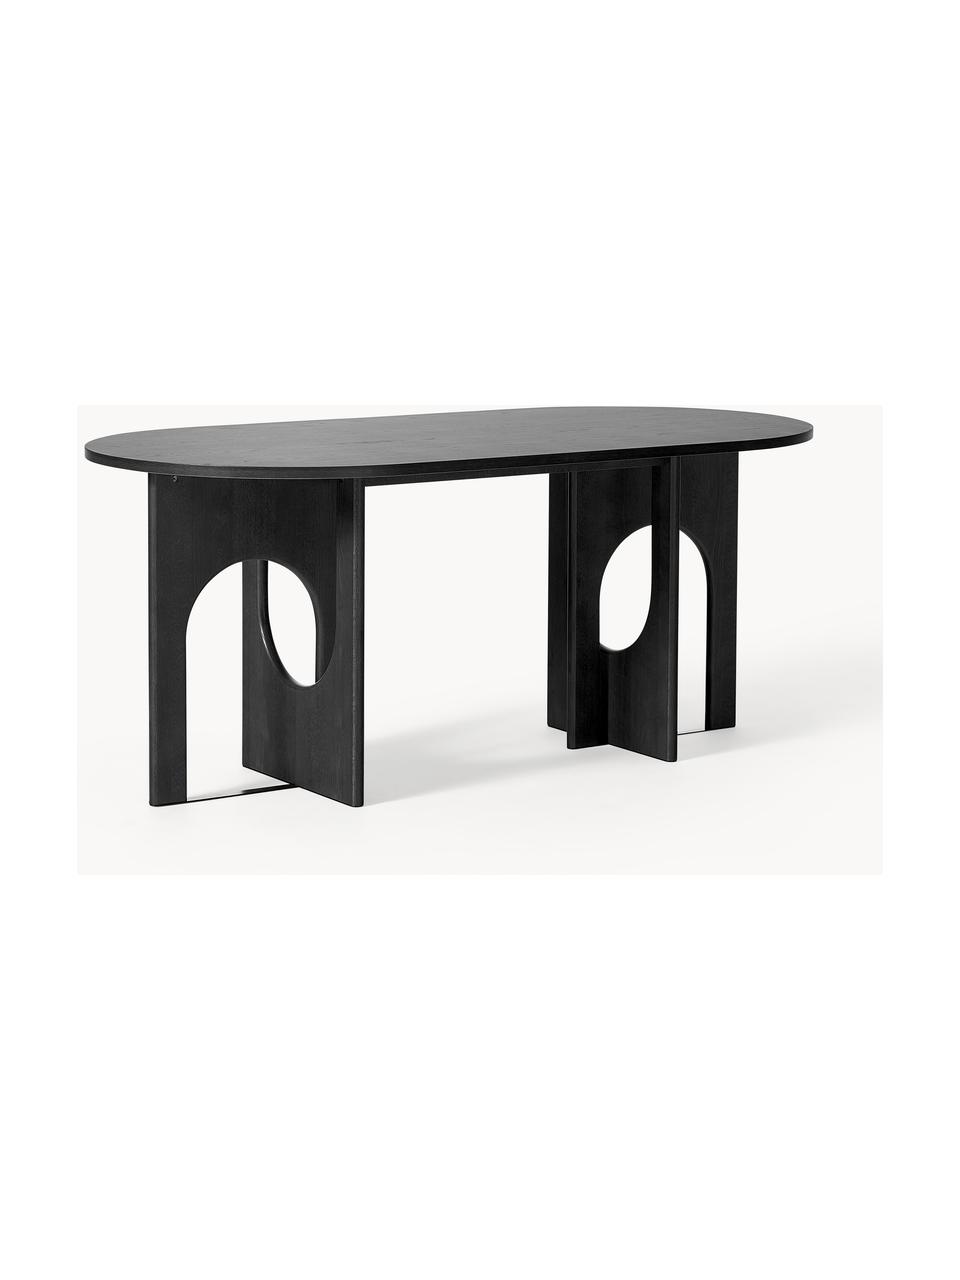 Oválný jídelní stůl Apollo, v různých velikostech, Dubové dřevo, černě lakované, Š 200 cm, H 90 cm